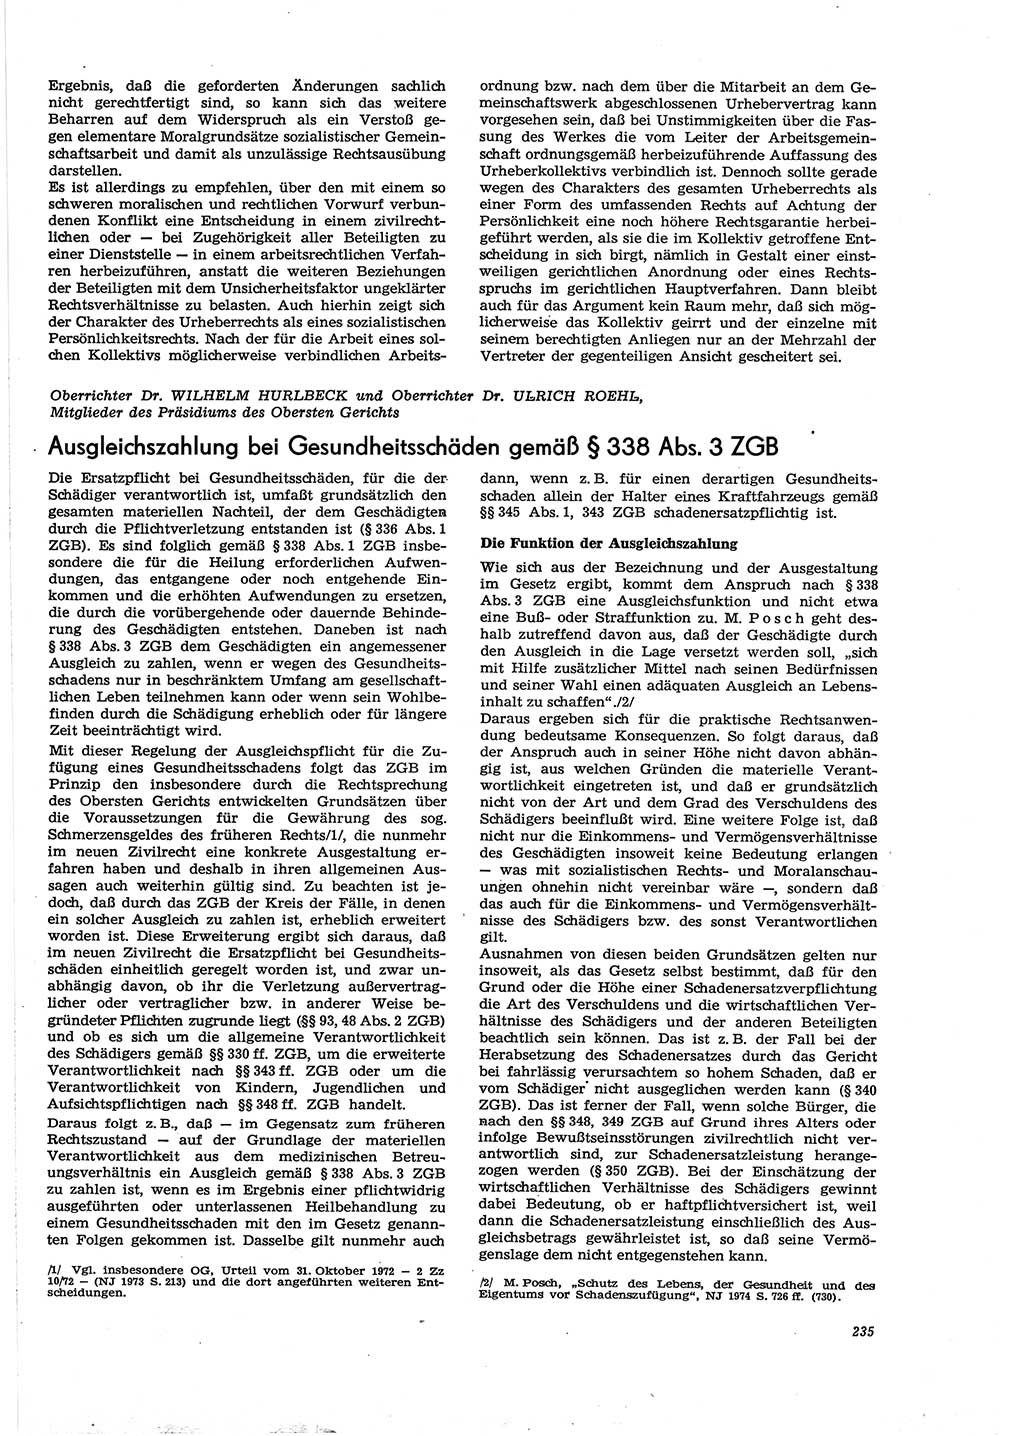 Neue Justiz (NJ), Zeitschrift für Recht und Rechtswissenschaft [Deutsche Demokratische Republik (DDR)], 30. Jahrgang 1976, Seite 235 (NJ DDR 1976, S. 235)